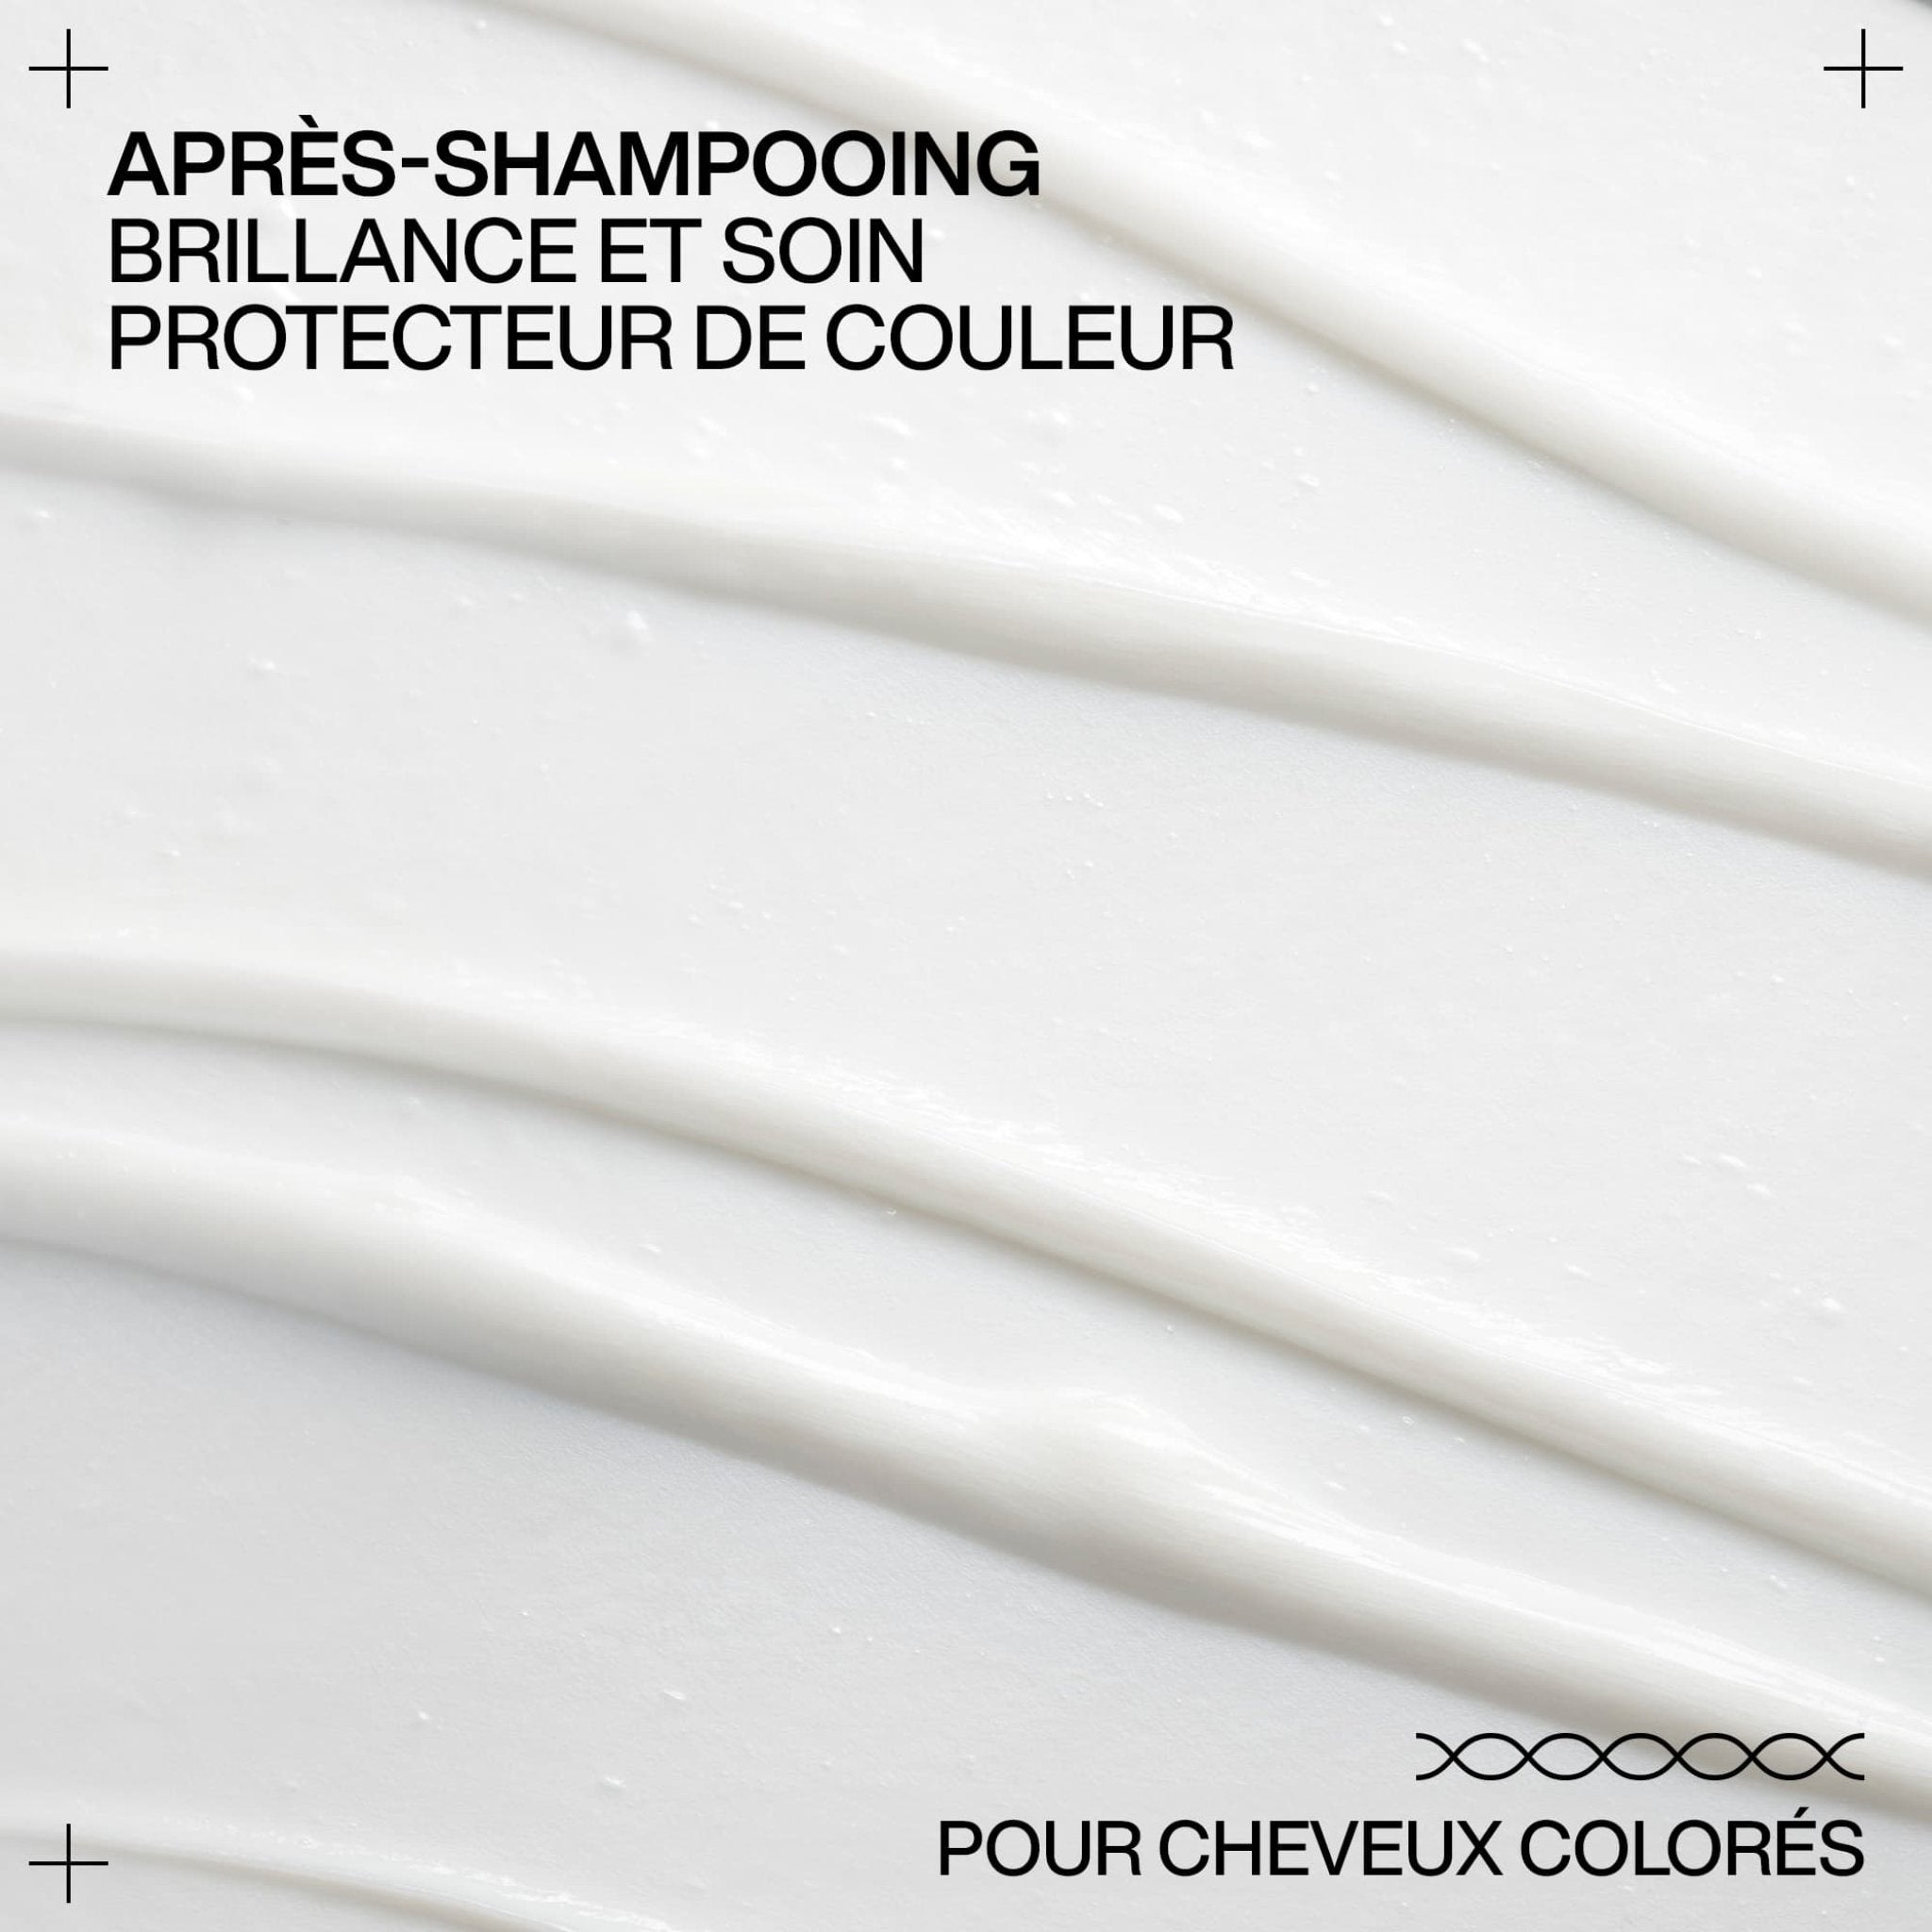 Redken. Revitalisant Acidic Color Gloss - 300 ml - Concept C. Shop